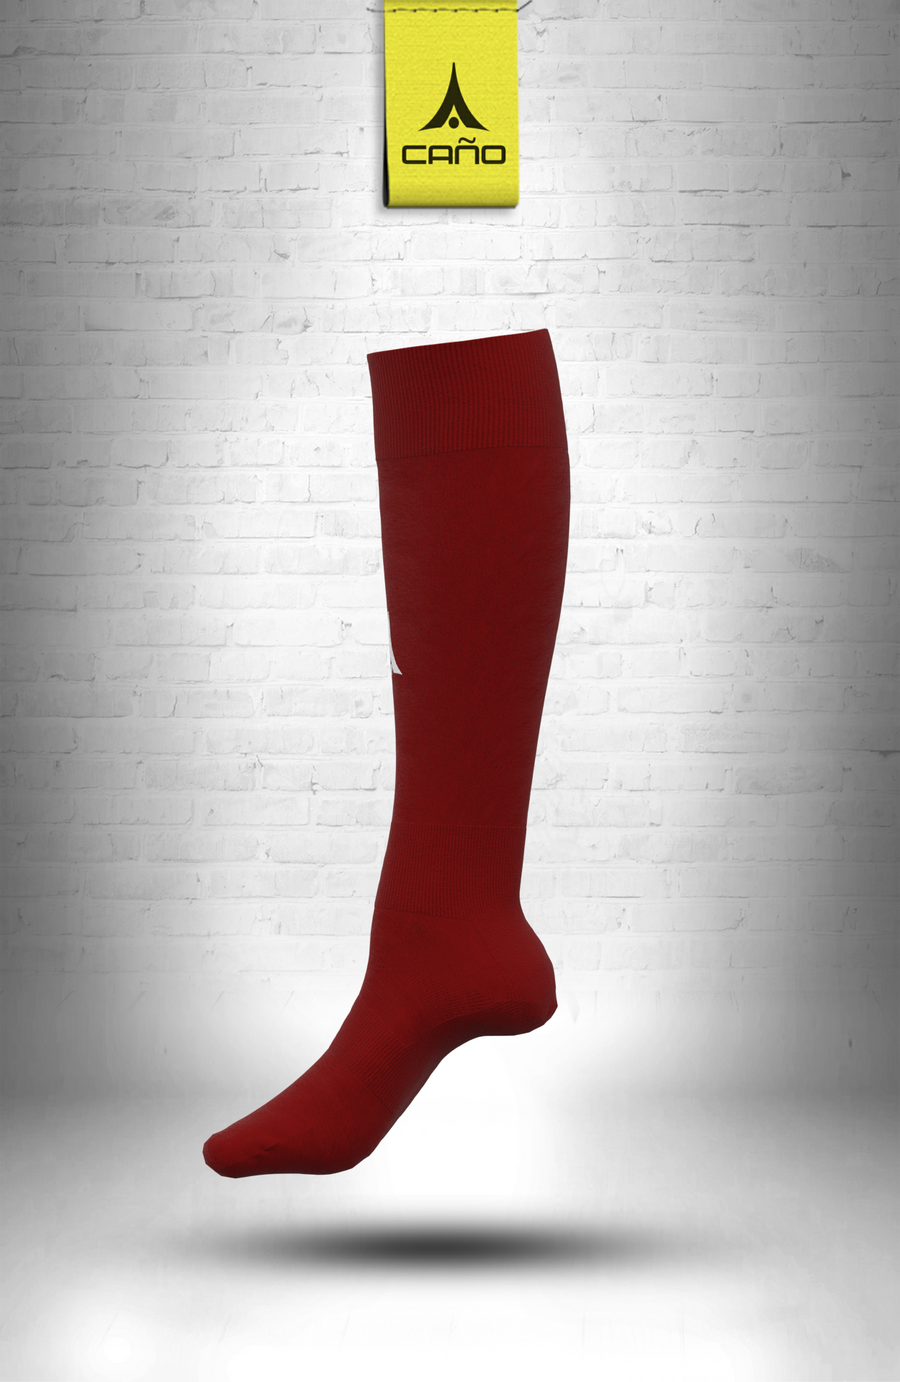 $10.00 - Caño Maroon Soccer Sock